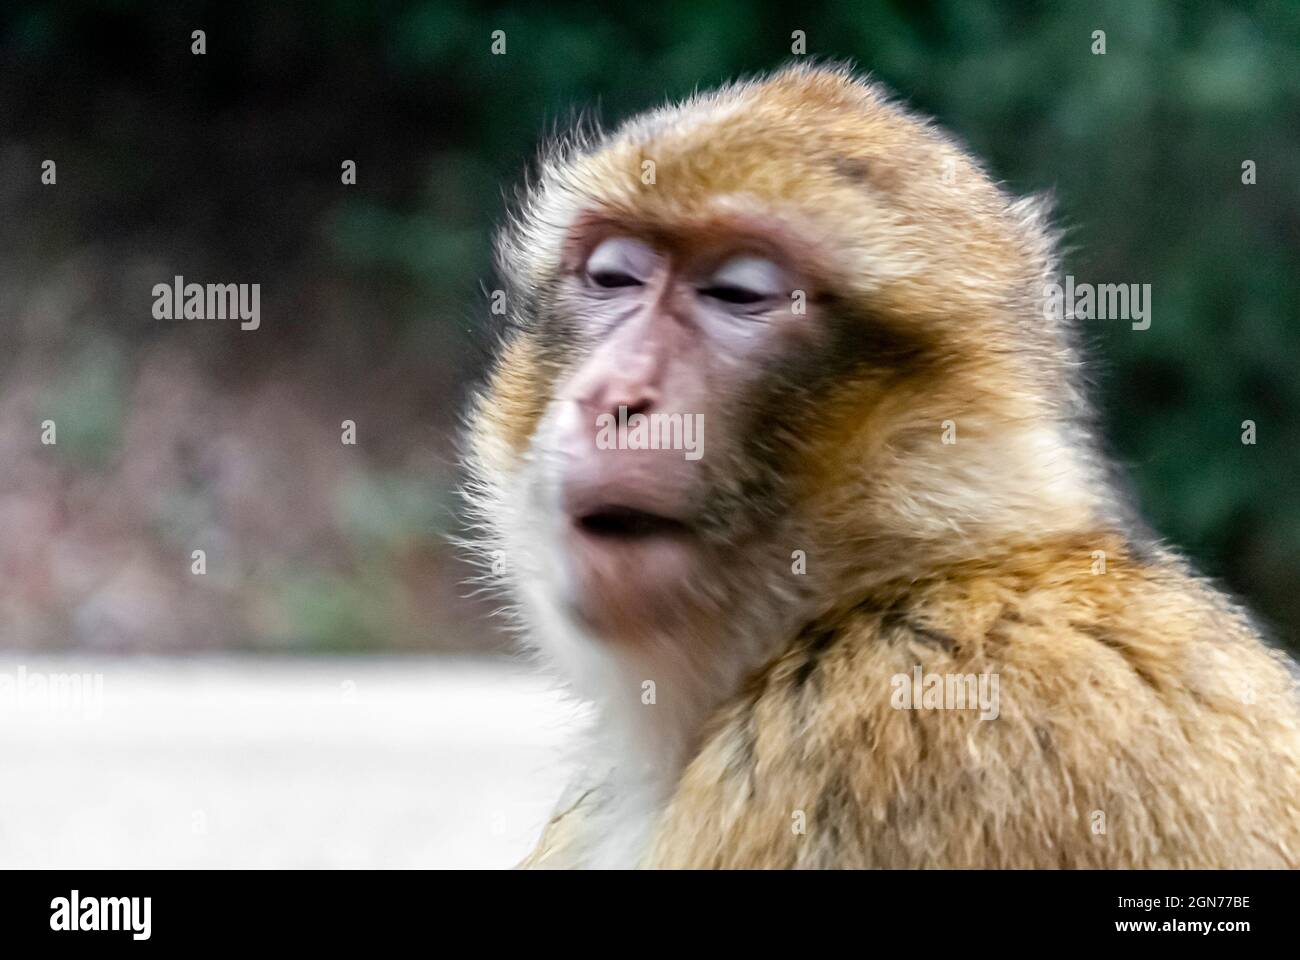 Nahaufnahme von freiblickenden Makaken, die mit warmen Farben und weichen Hintergrundunschärfen herumlaufen Stockfoto